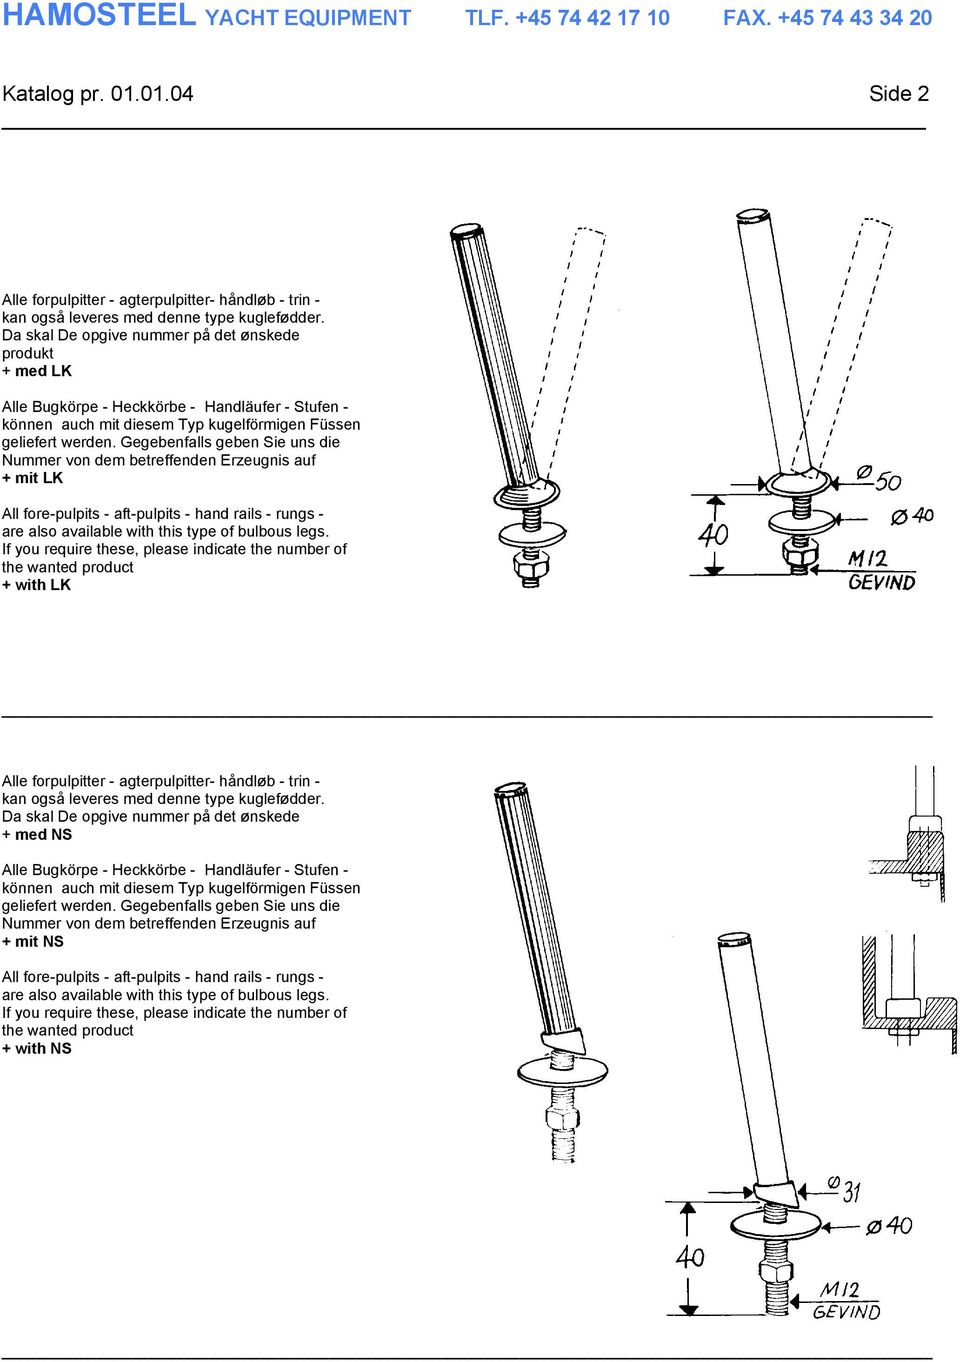 Gegebenfalls geben Sie uns die Nummer von dem betreffenden Erzeugnis auf + mit LK All fore-pulpits - aft-pulpits - hand rails - rungs - are also available with this type of bulbous legs.